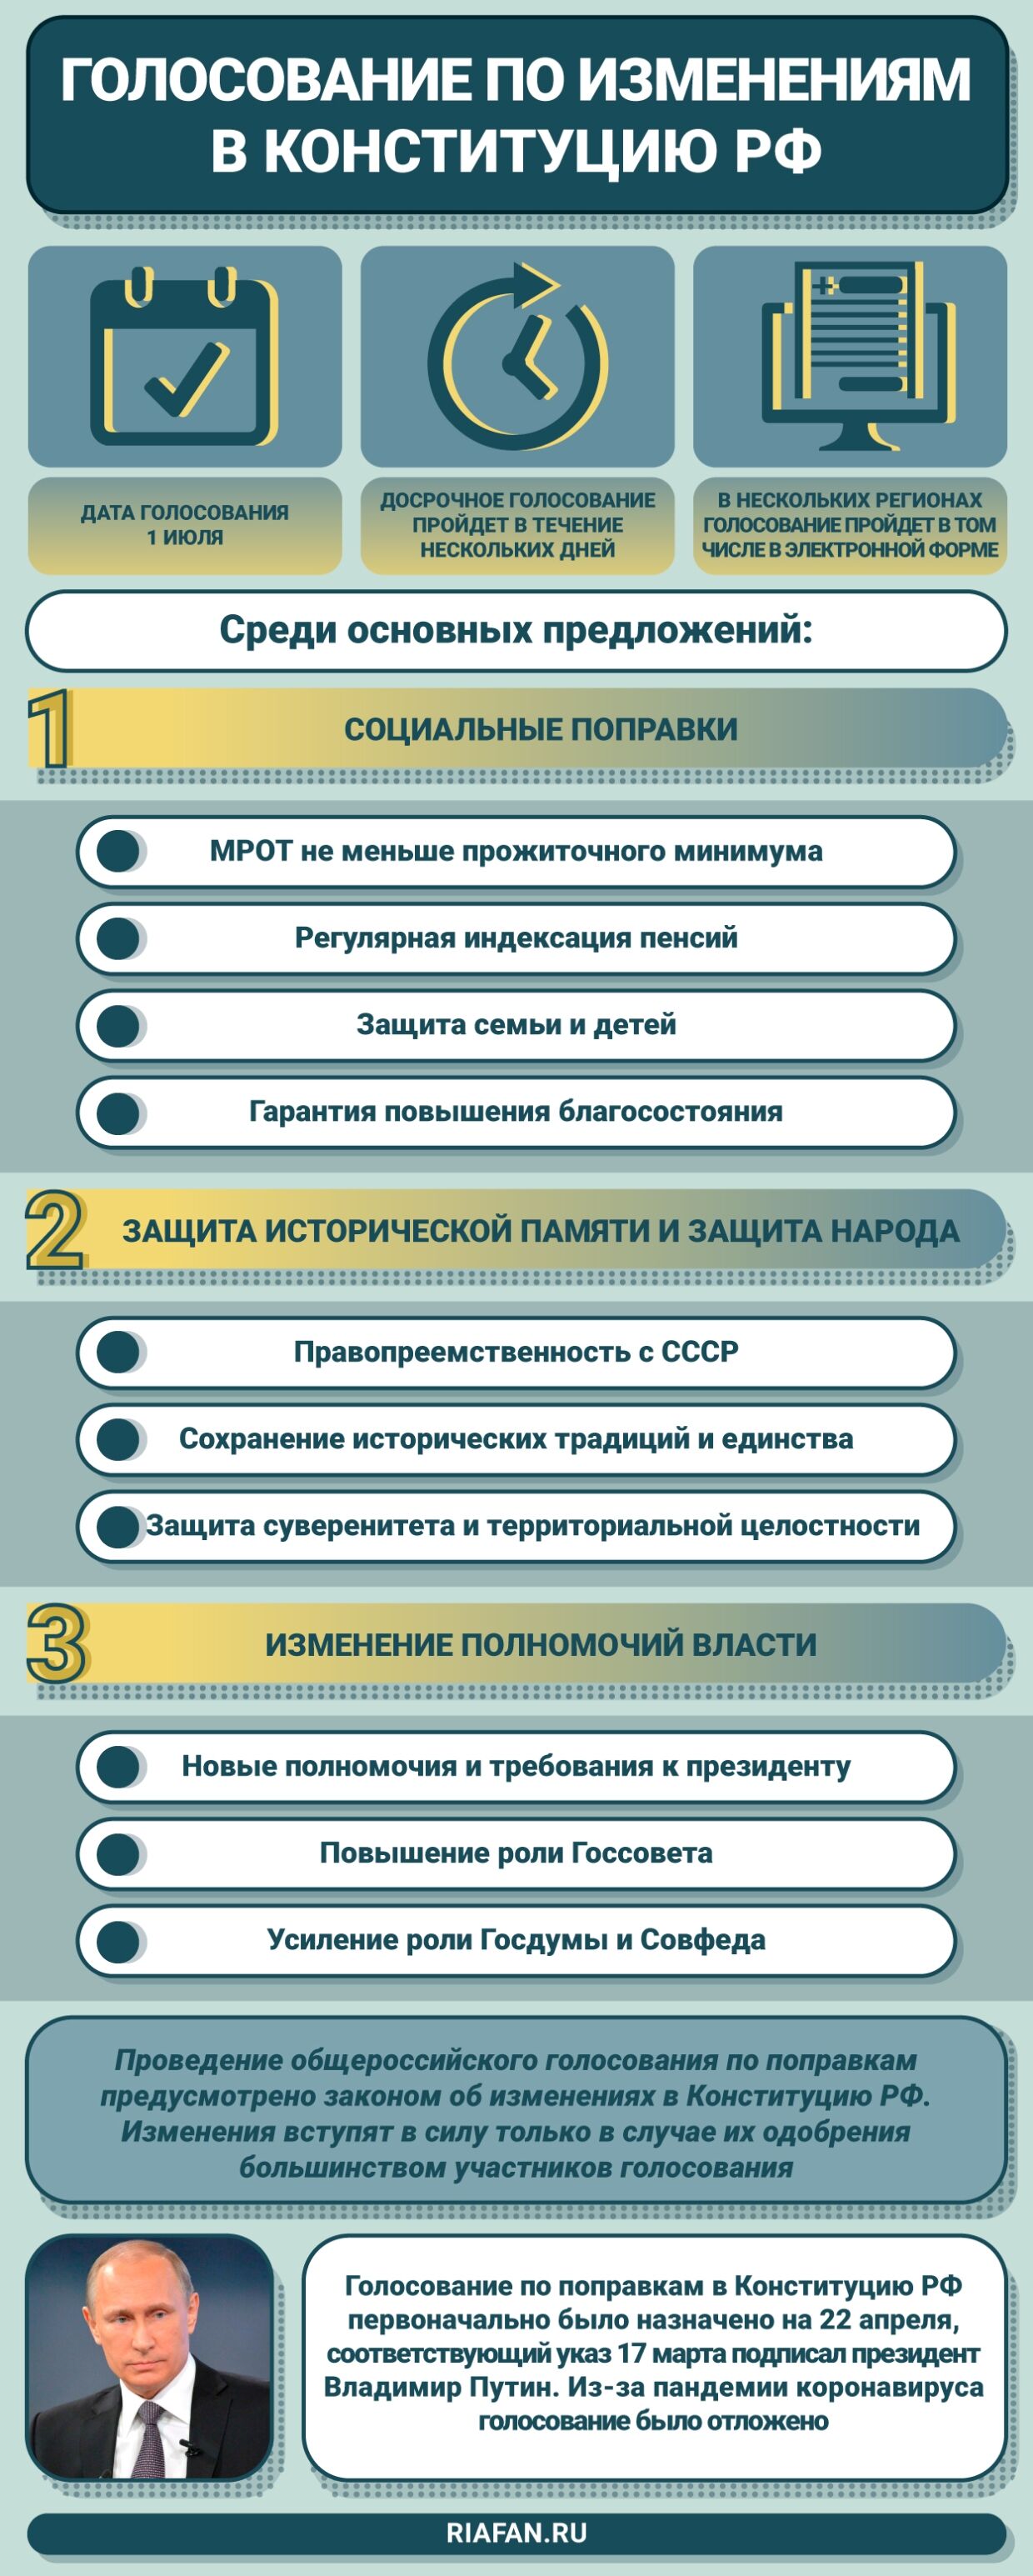 Головченко объяснил распределение россиян на пунктах голосования по конституции